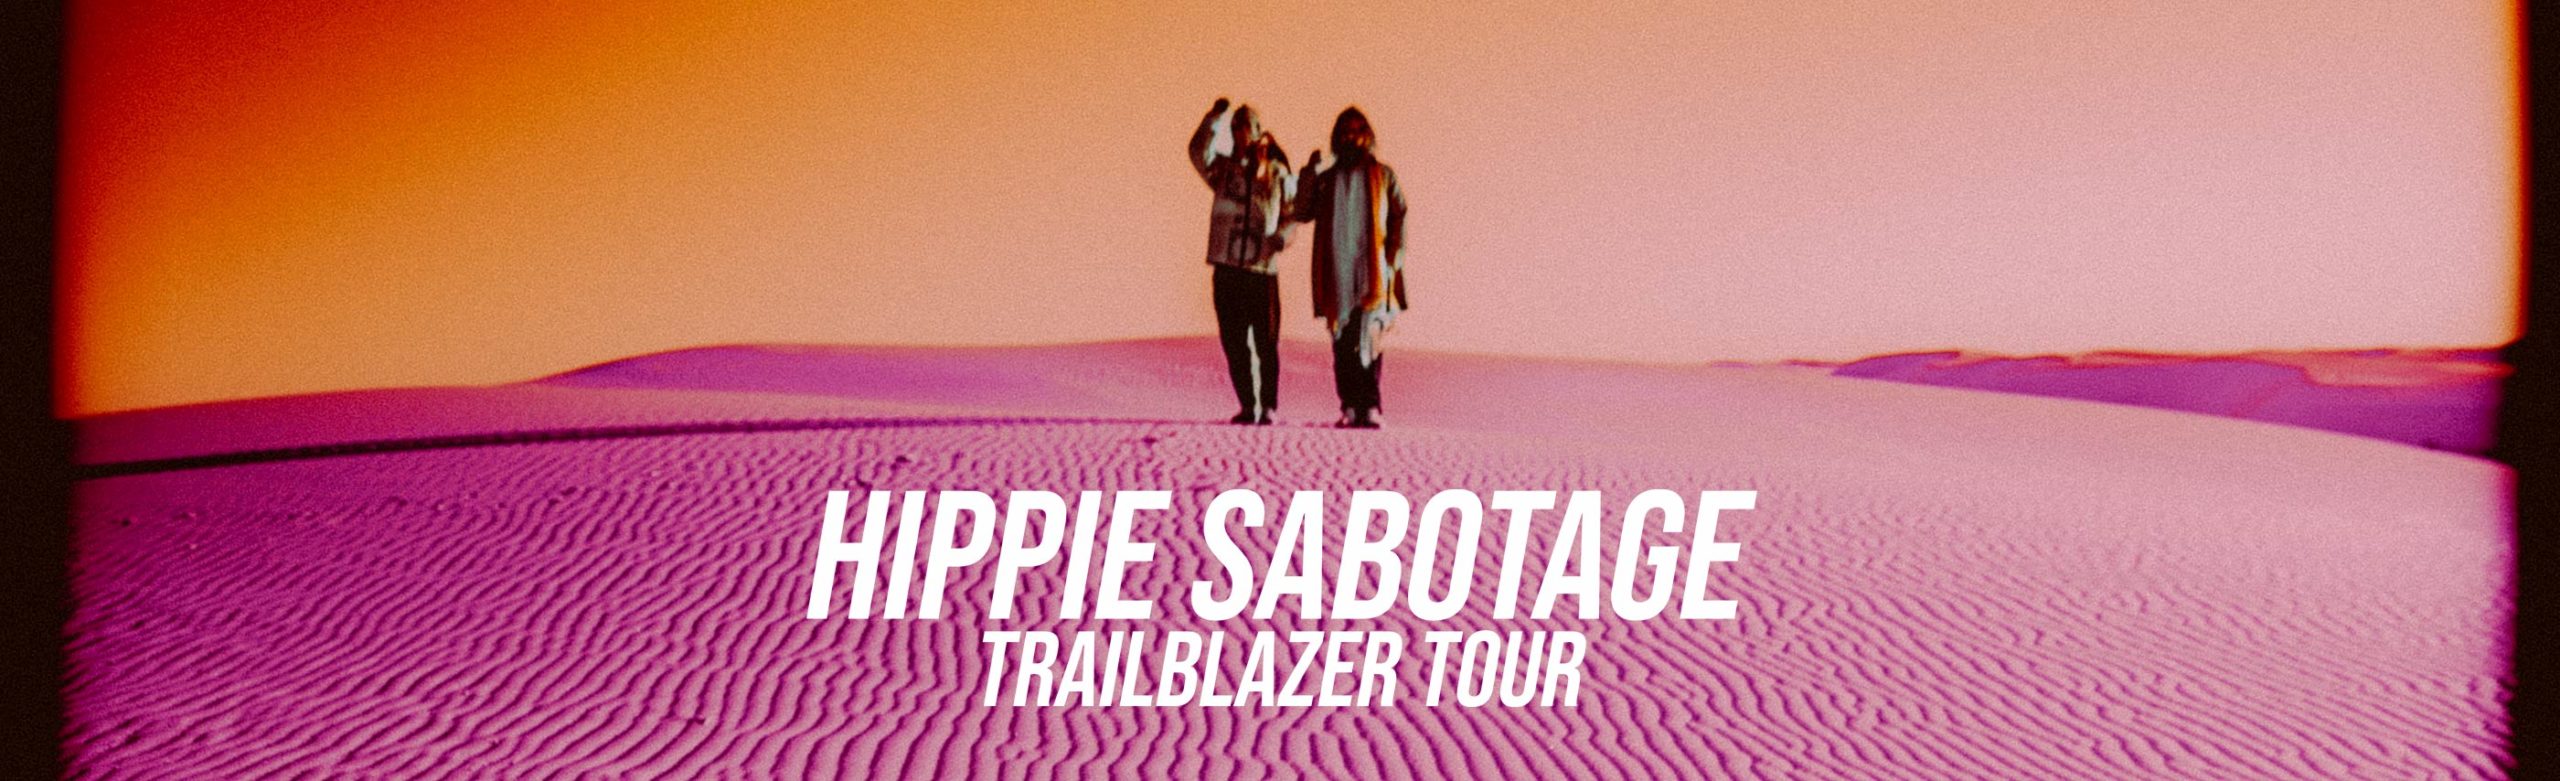 Hippie Sabotage Announce The Trailblazer Tour 2023 Dates in Montana Image